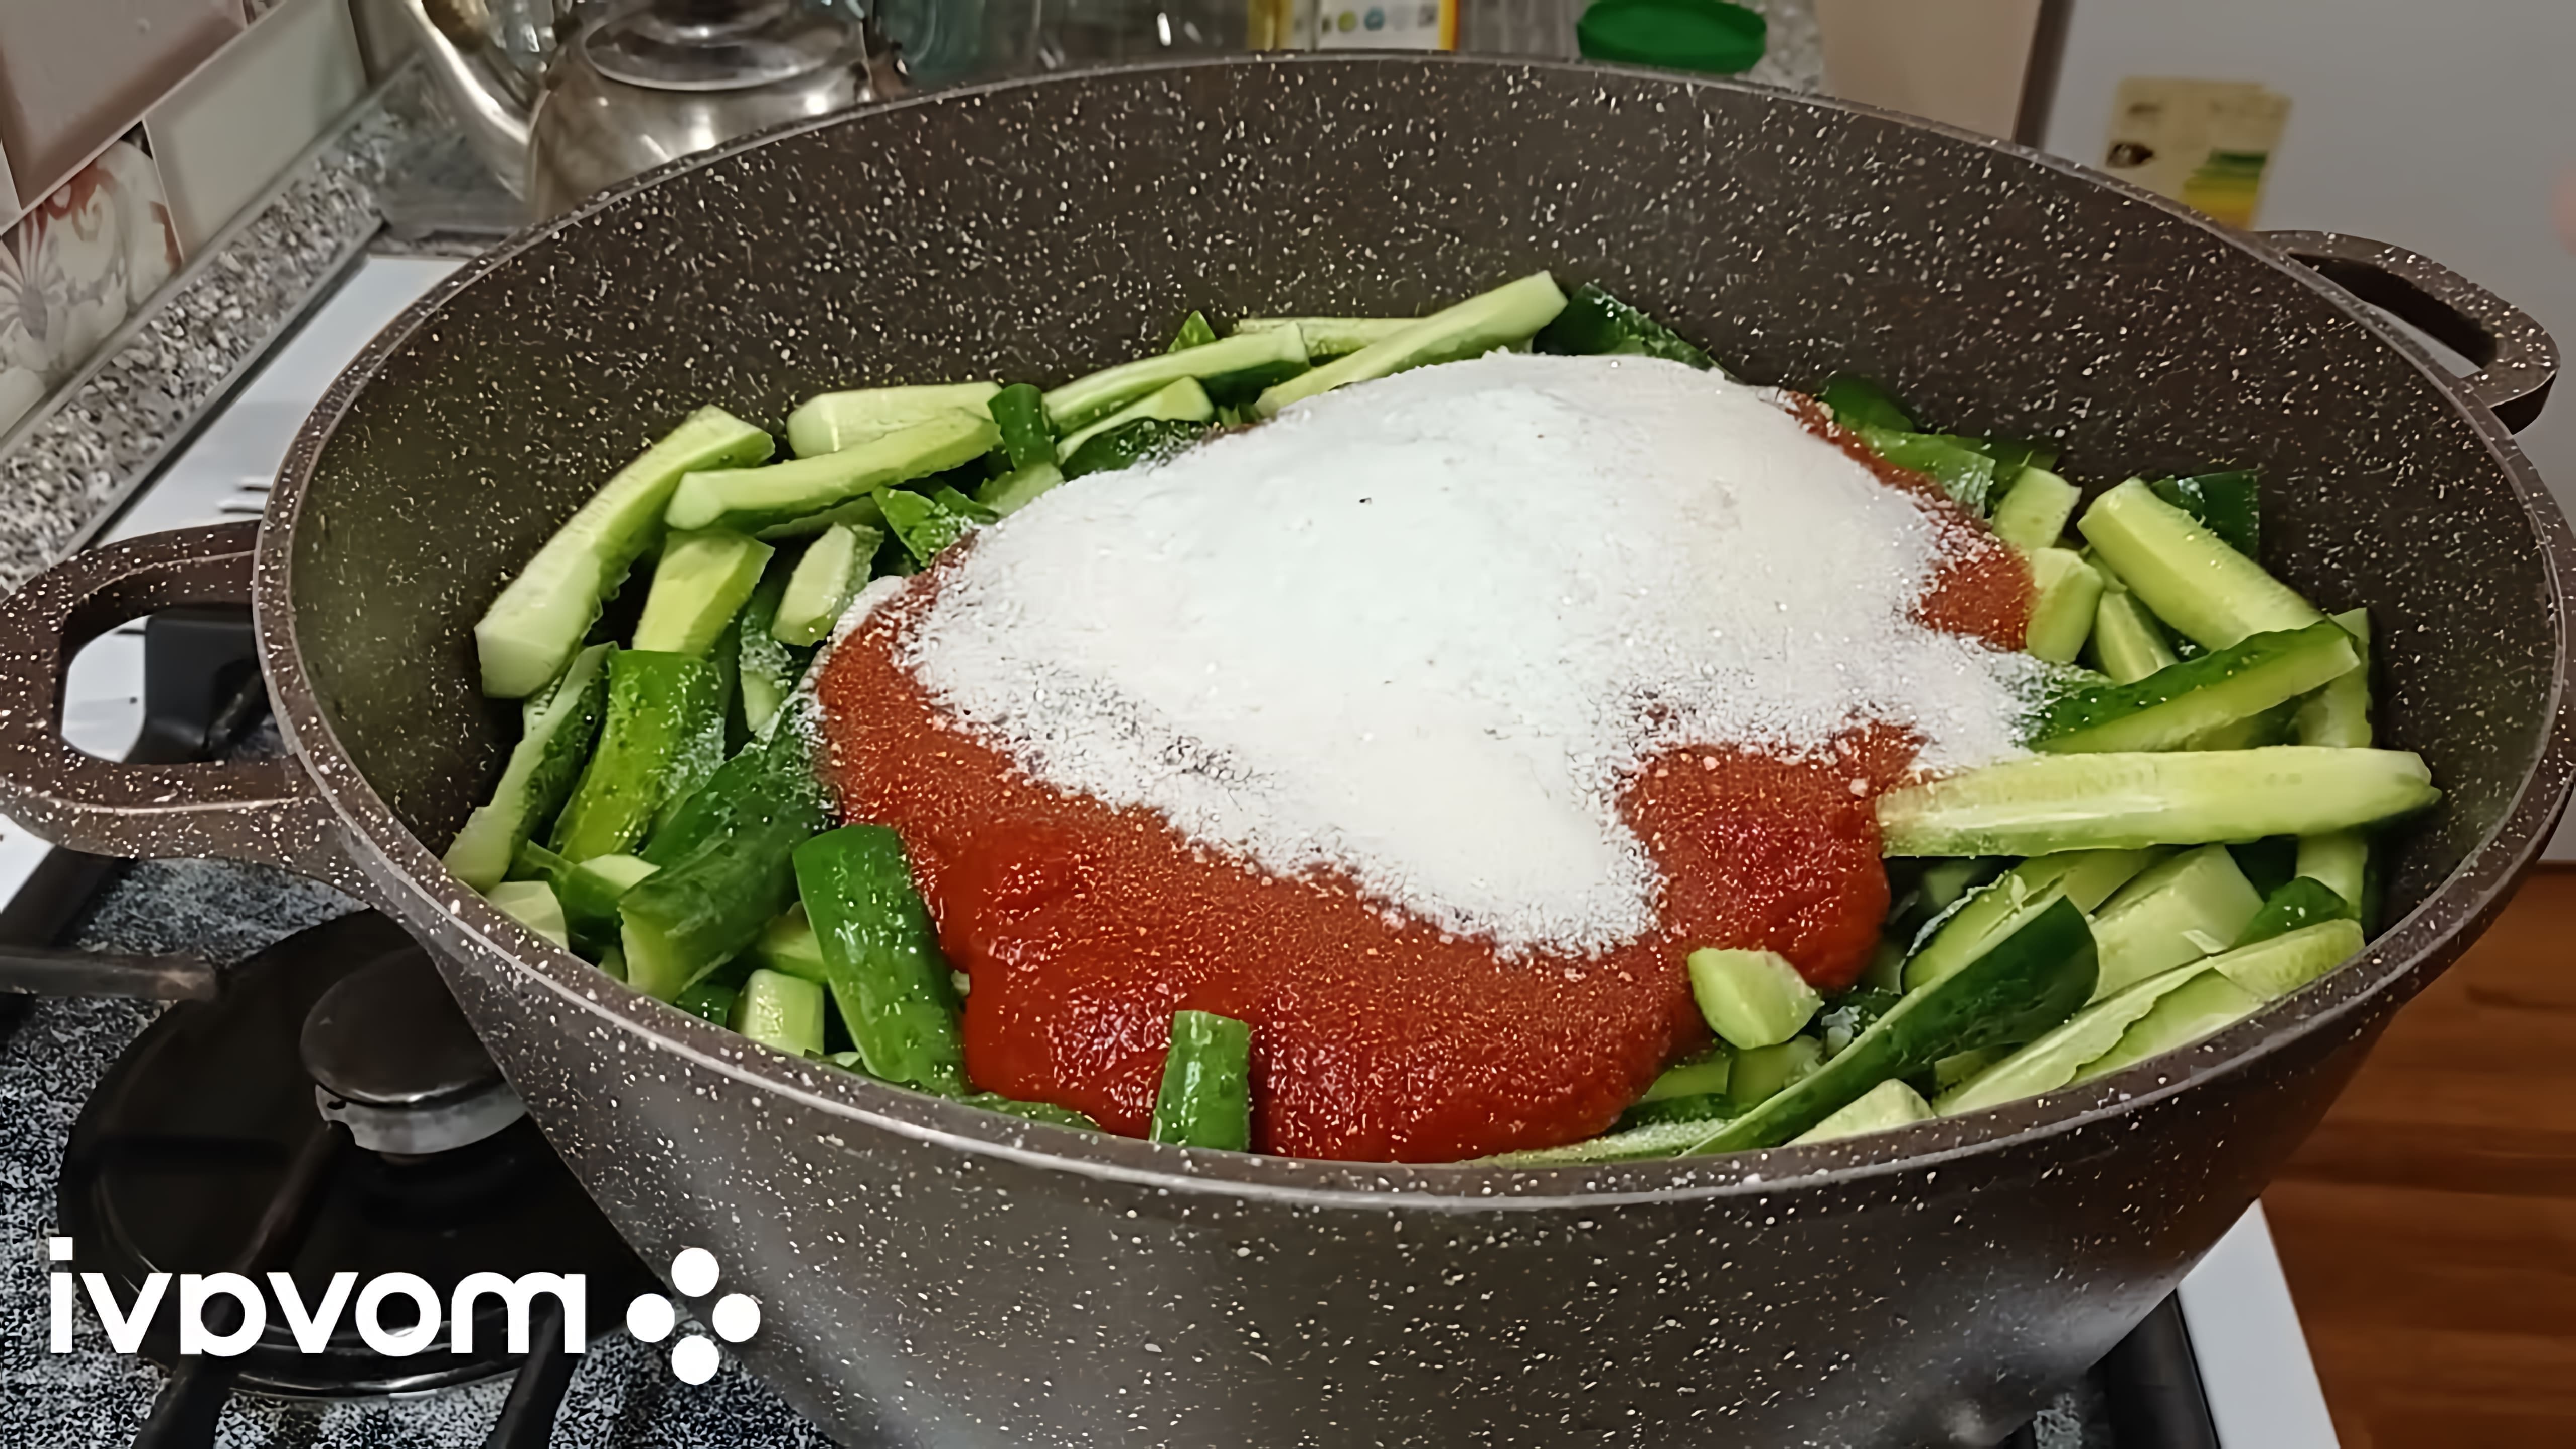 В этом видео демонстрируется рецепт приготовления огурцов в томатной заливке